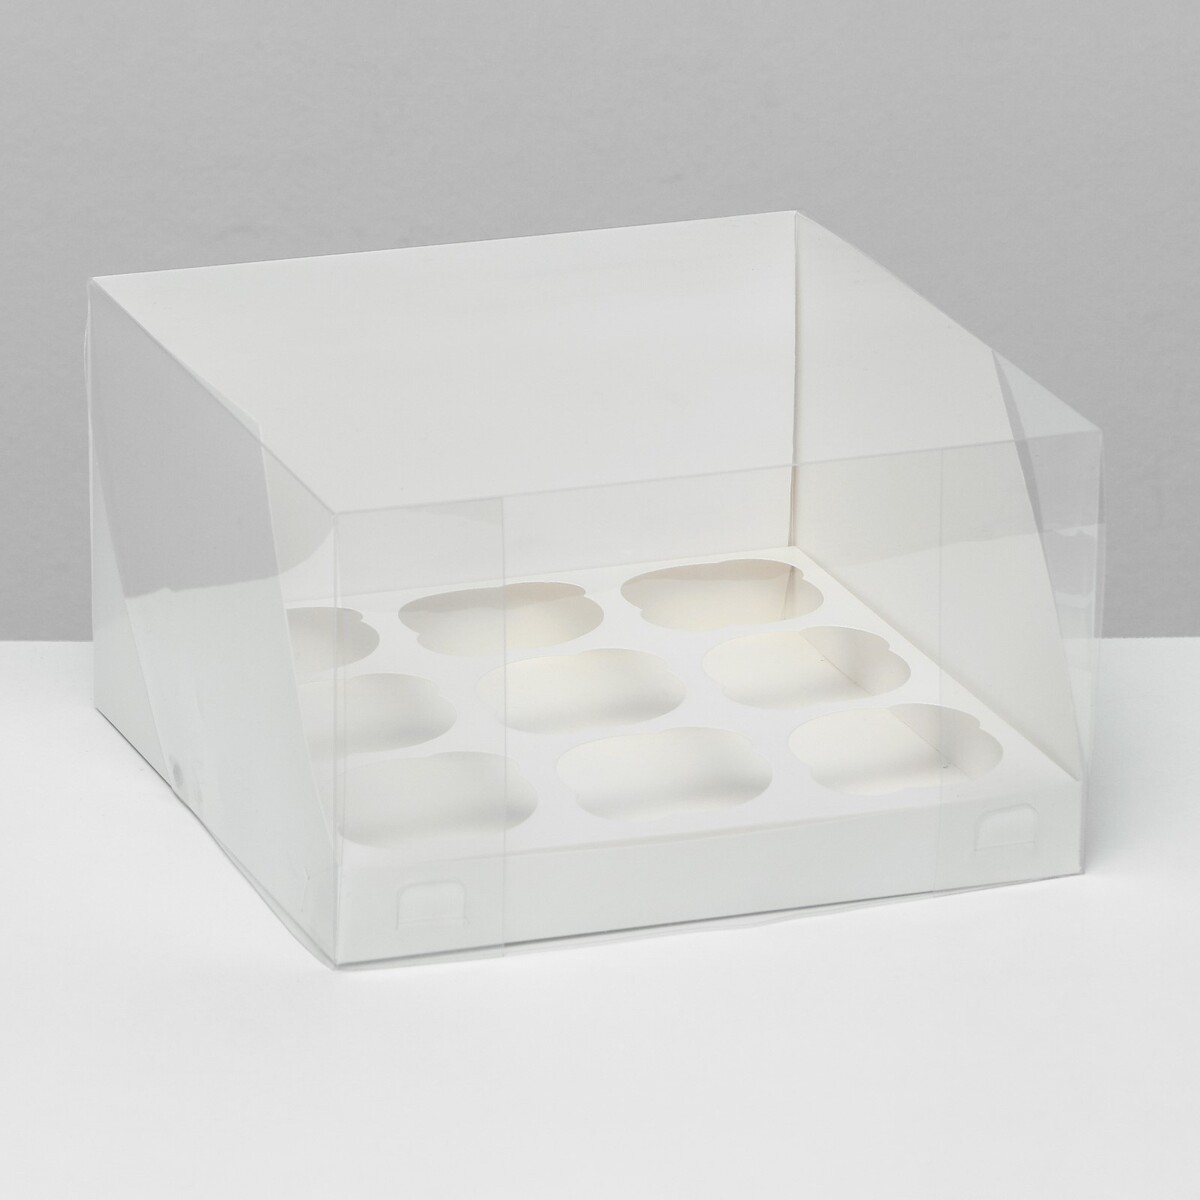 Кондитерская складная коробка для 9 капкейков белая 23,5 x 23 x 14 см подставка для планшета регулируемая складная резиновые вставки белая